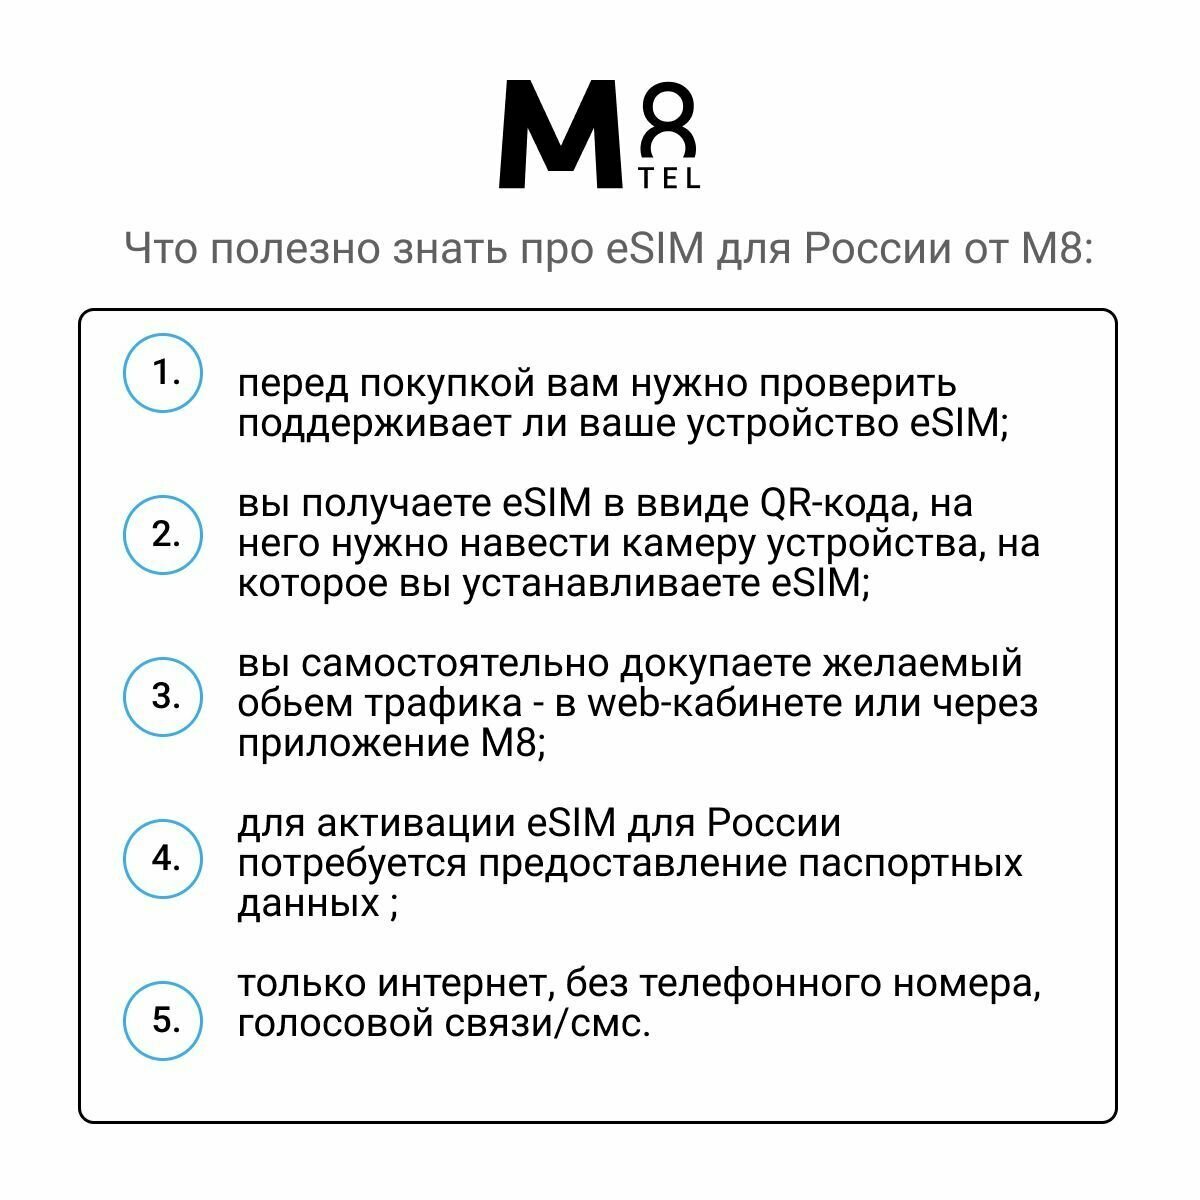 ESIM - электронная SIM-карта для России от М8 сеть Мегафон (виртуальная)